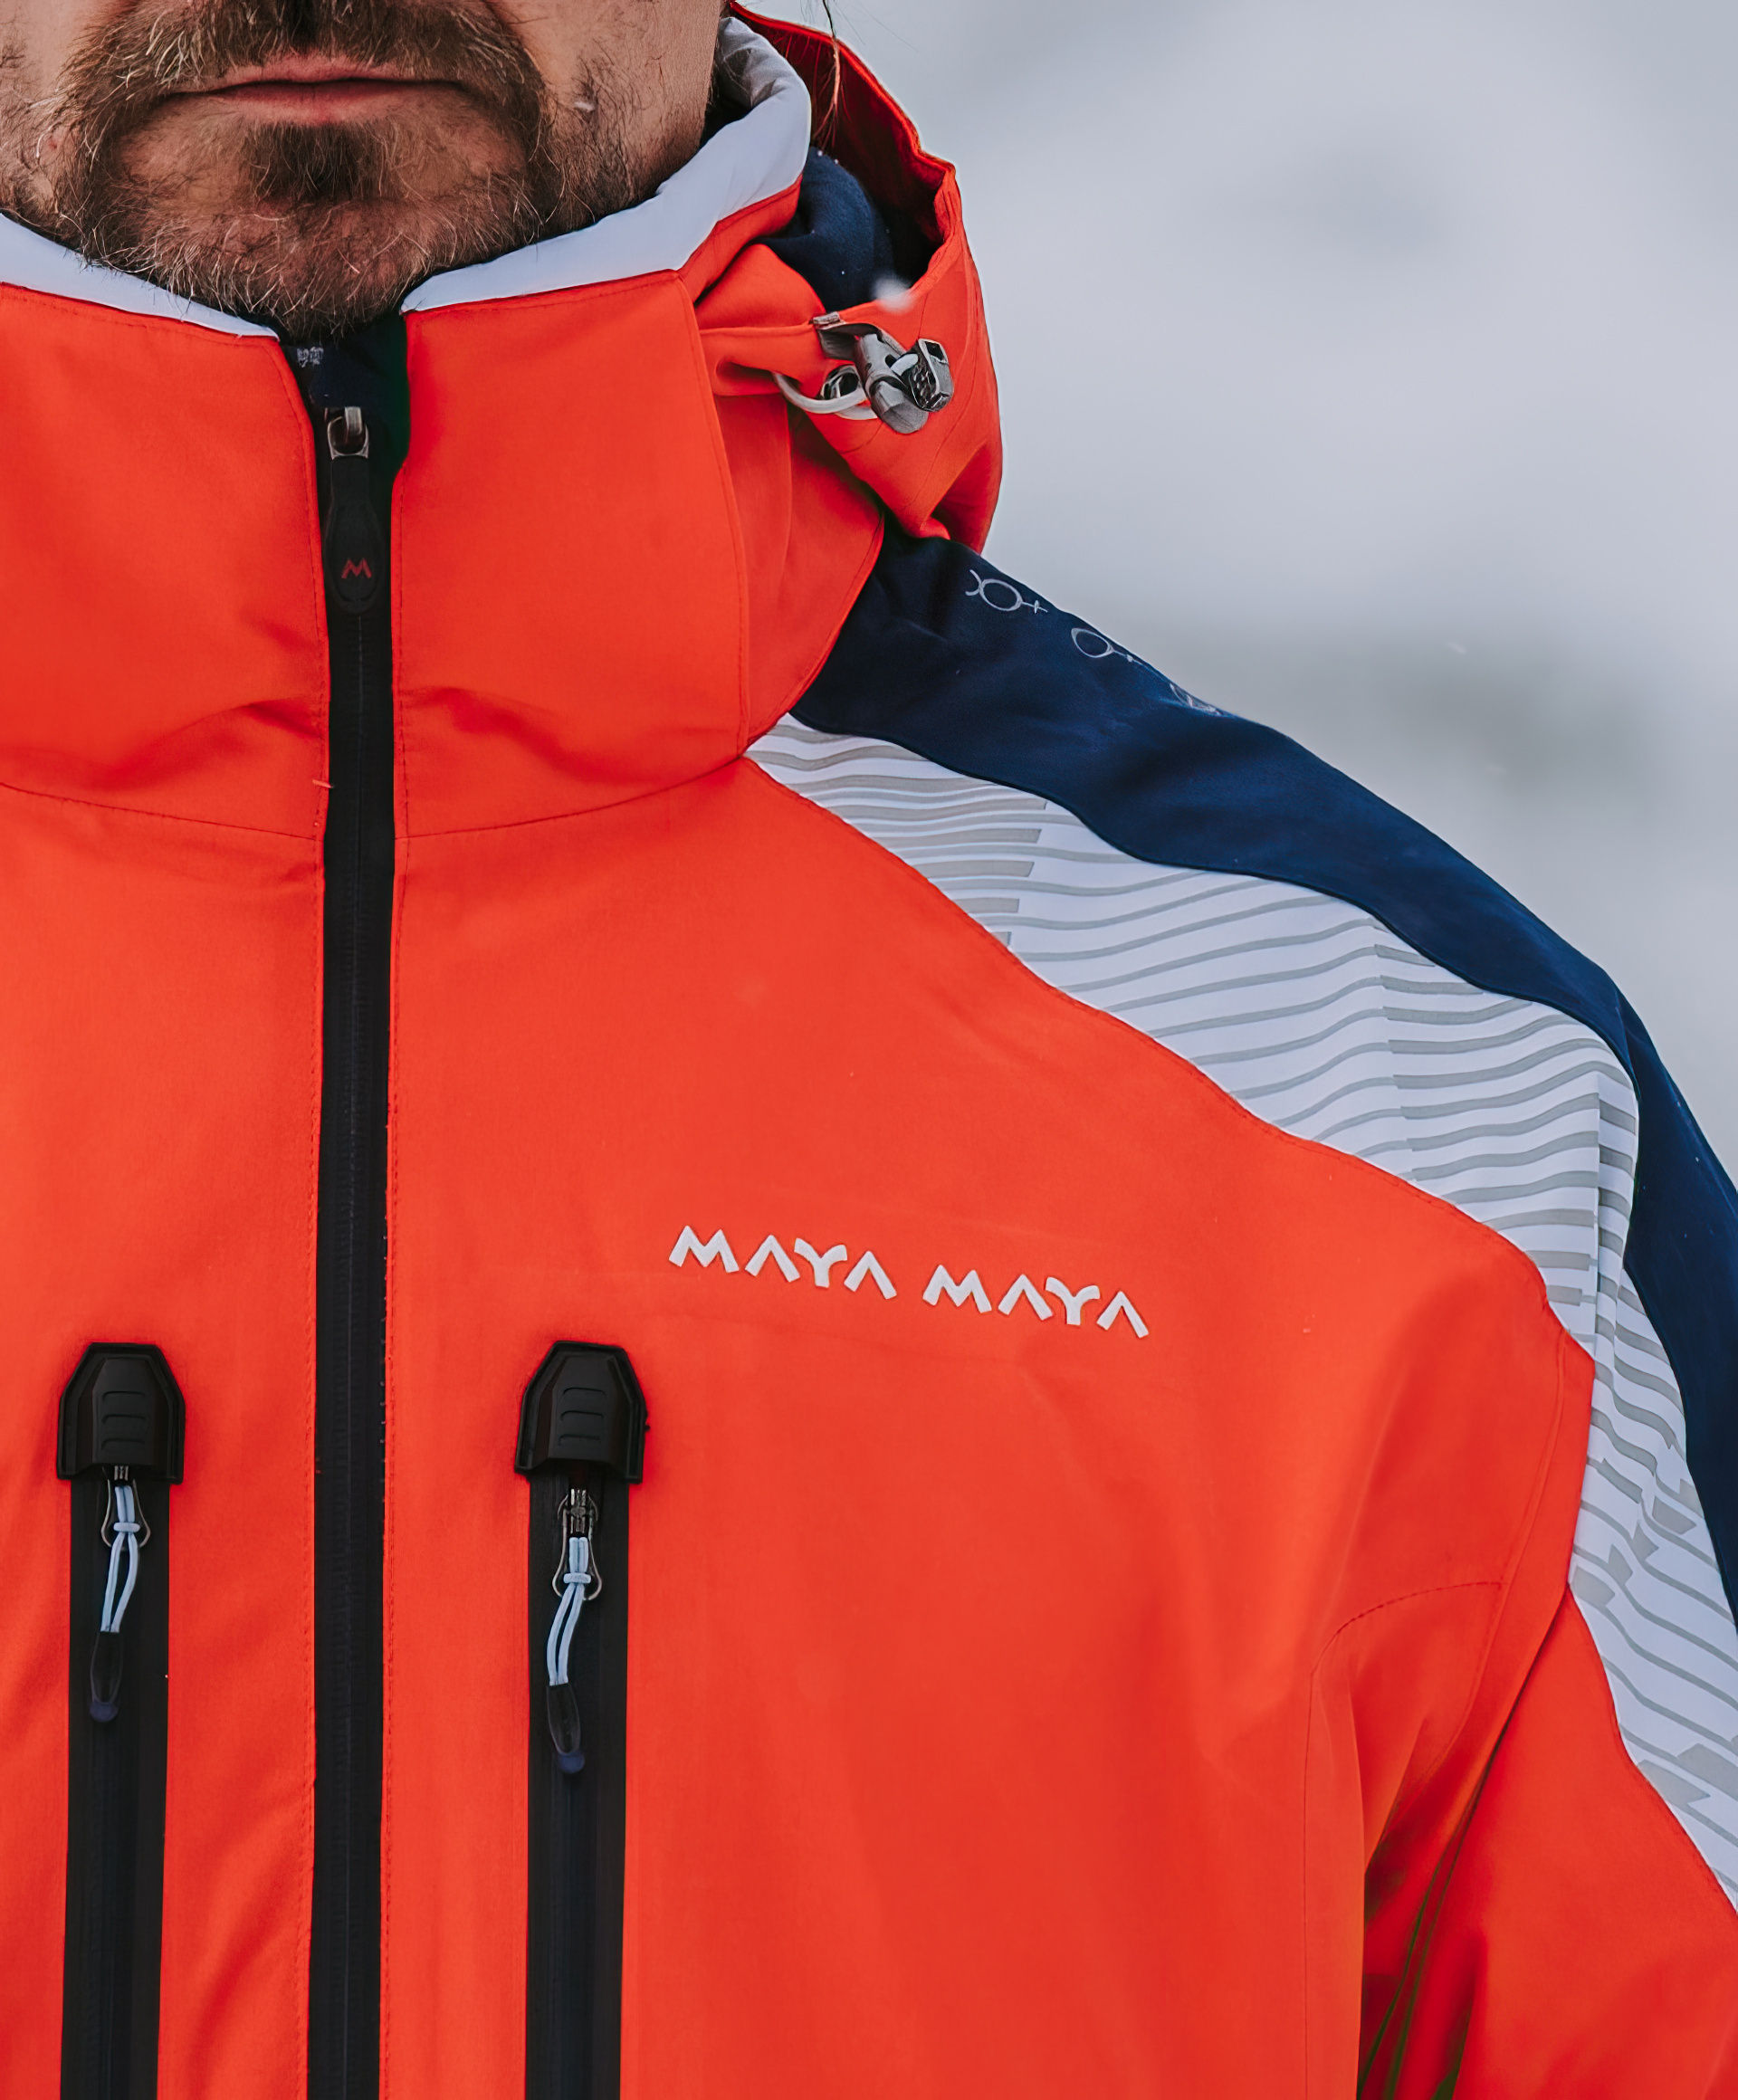 Odion jacket red from MAYA MAYA is a designer ski jacket for men